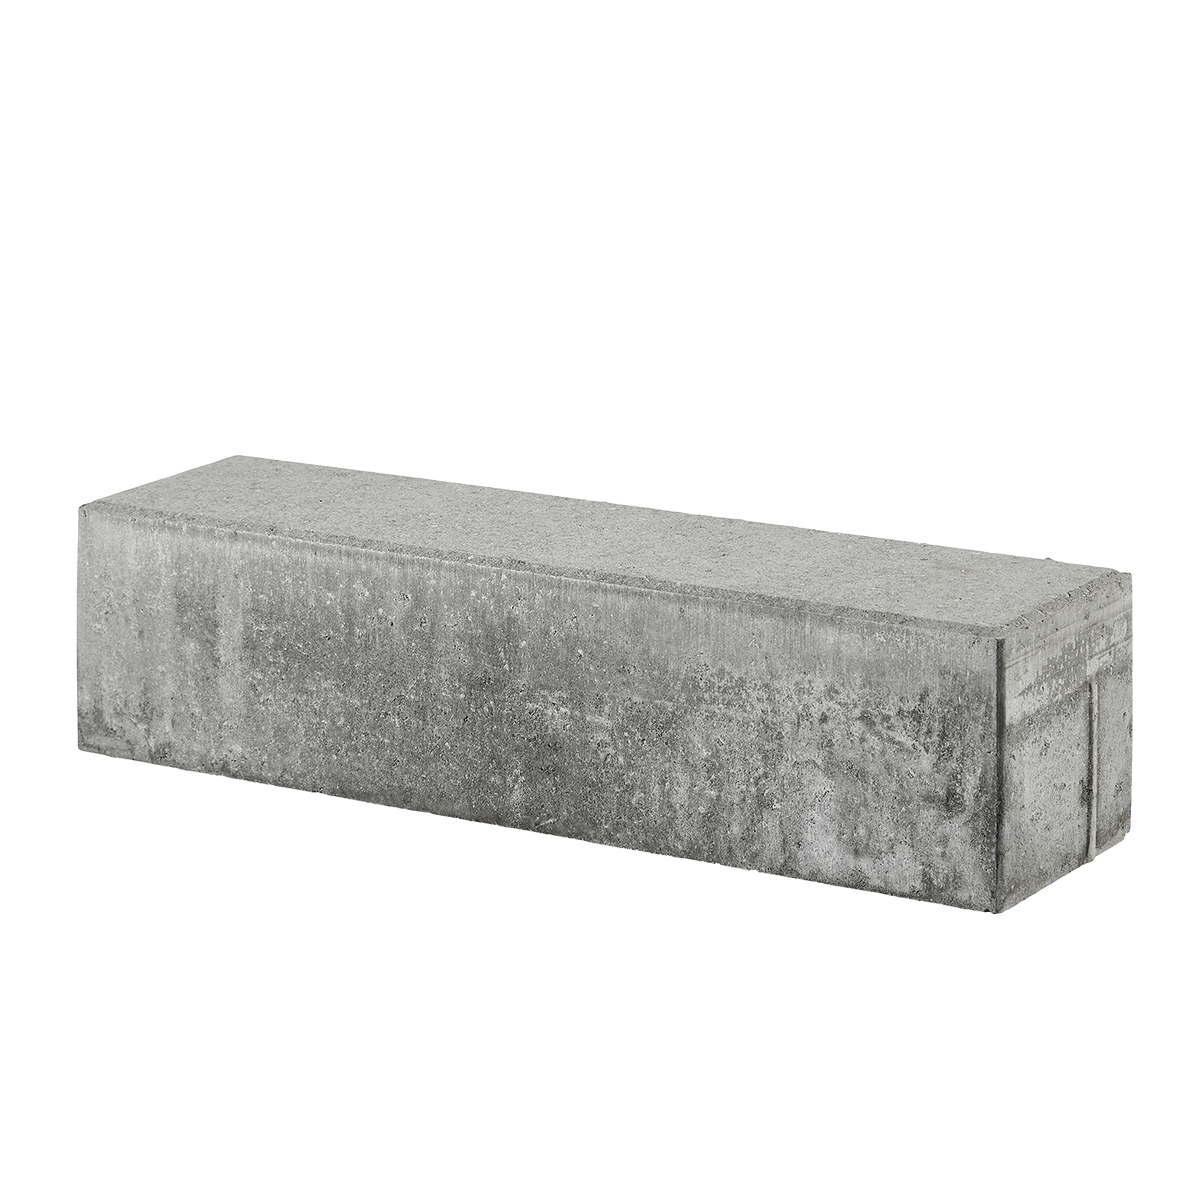 Albertslund-tiefbordrandsteine 15x15x60 cm Grau